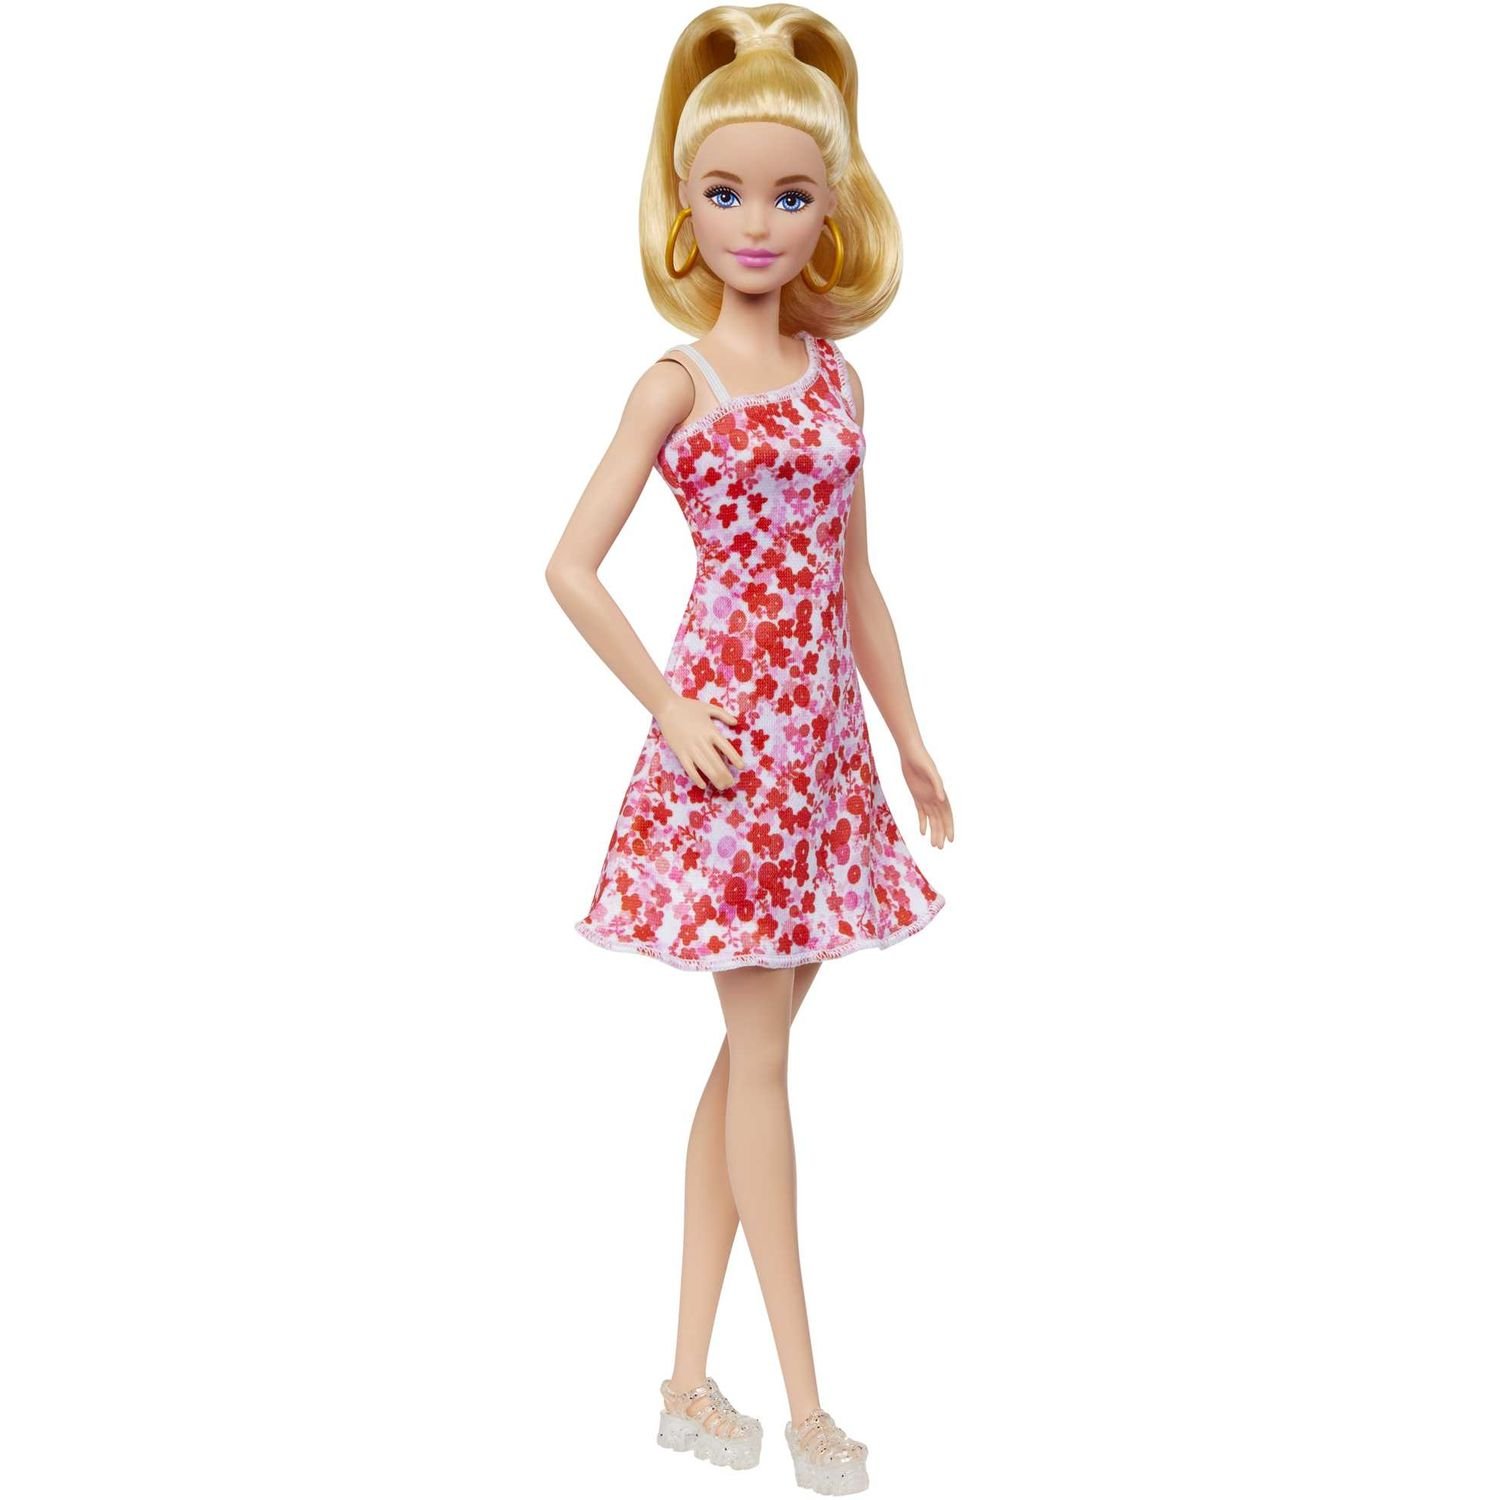 Кукла Barbie Модница в сарафане в цветочный принт, 30 см (HJT02) - фото 1